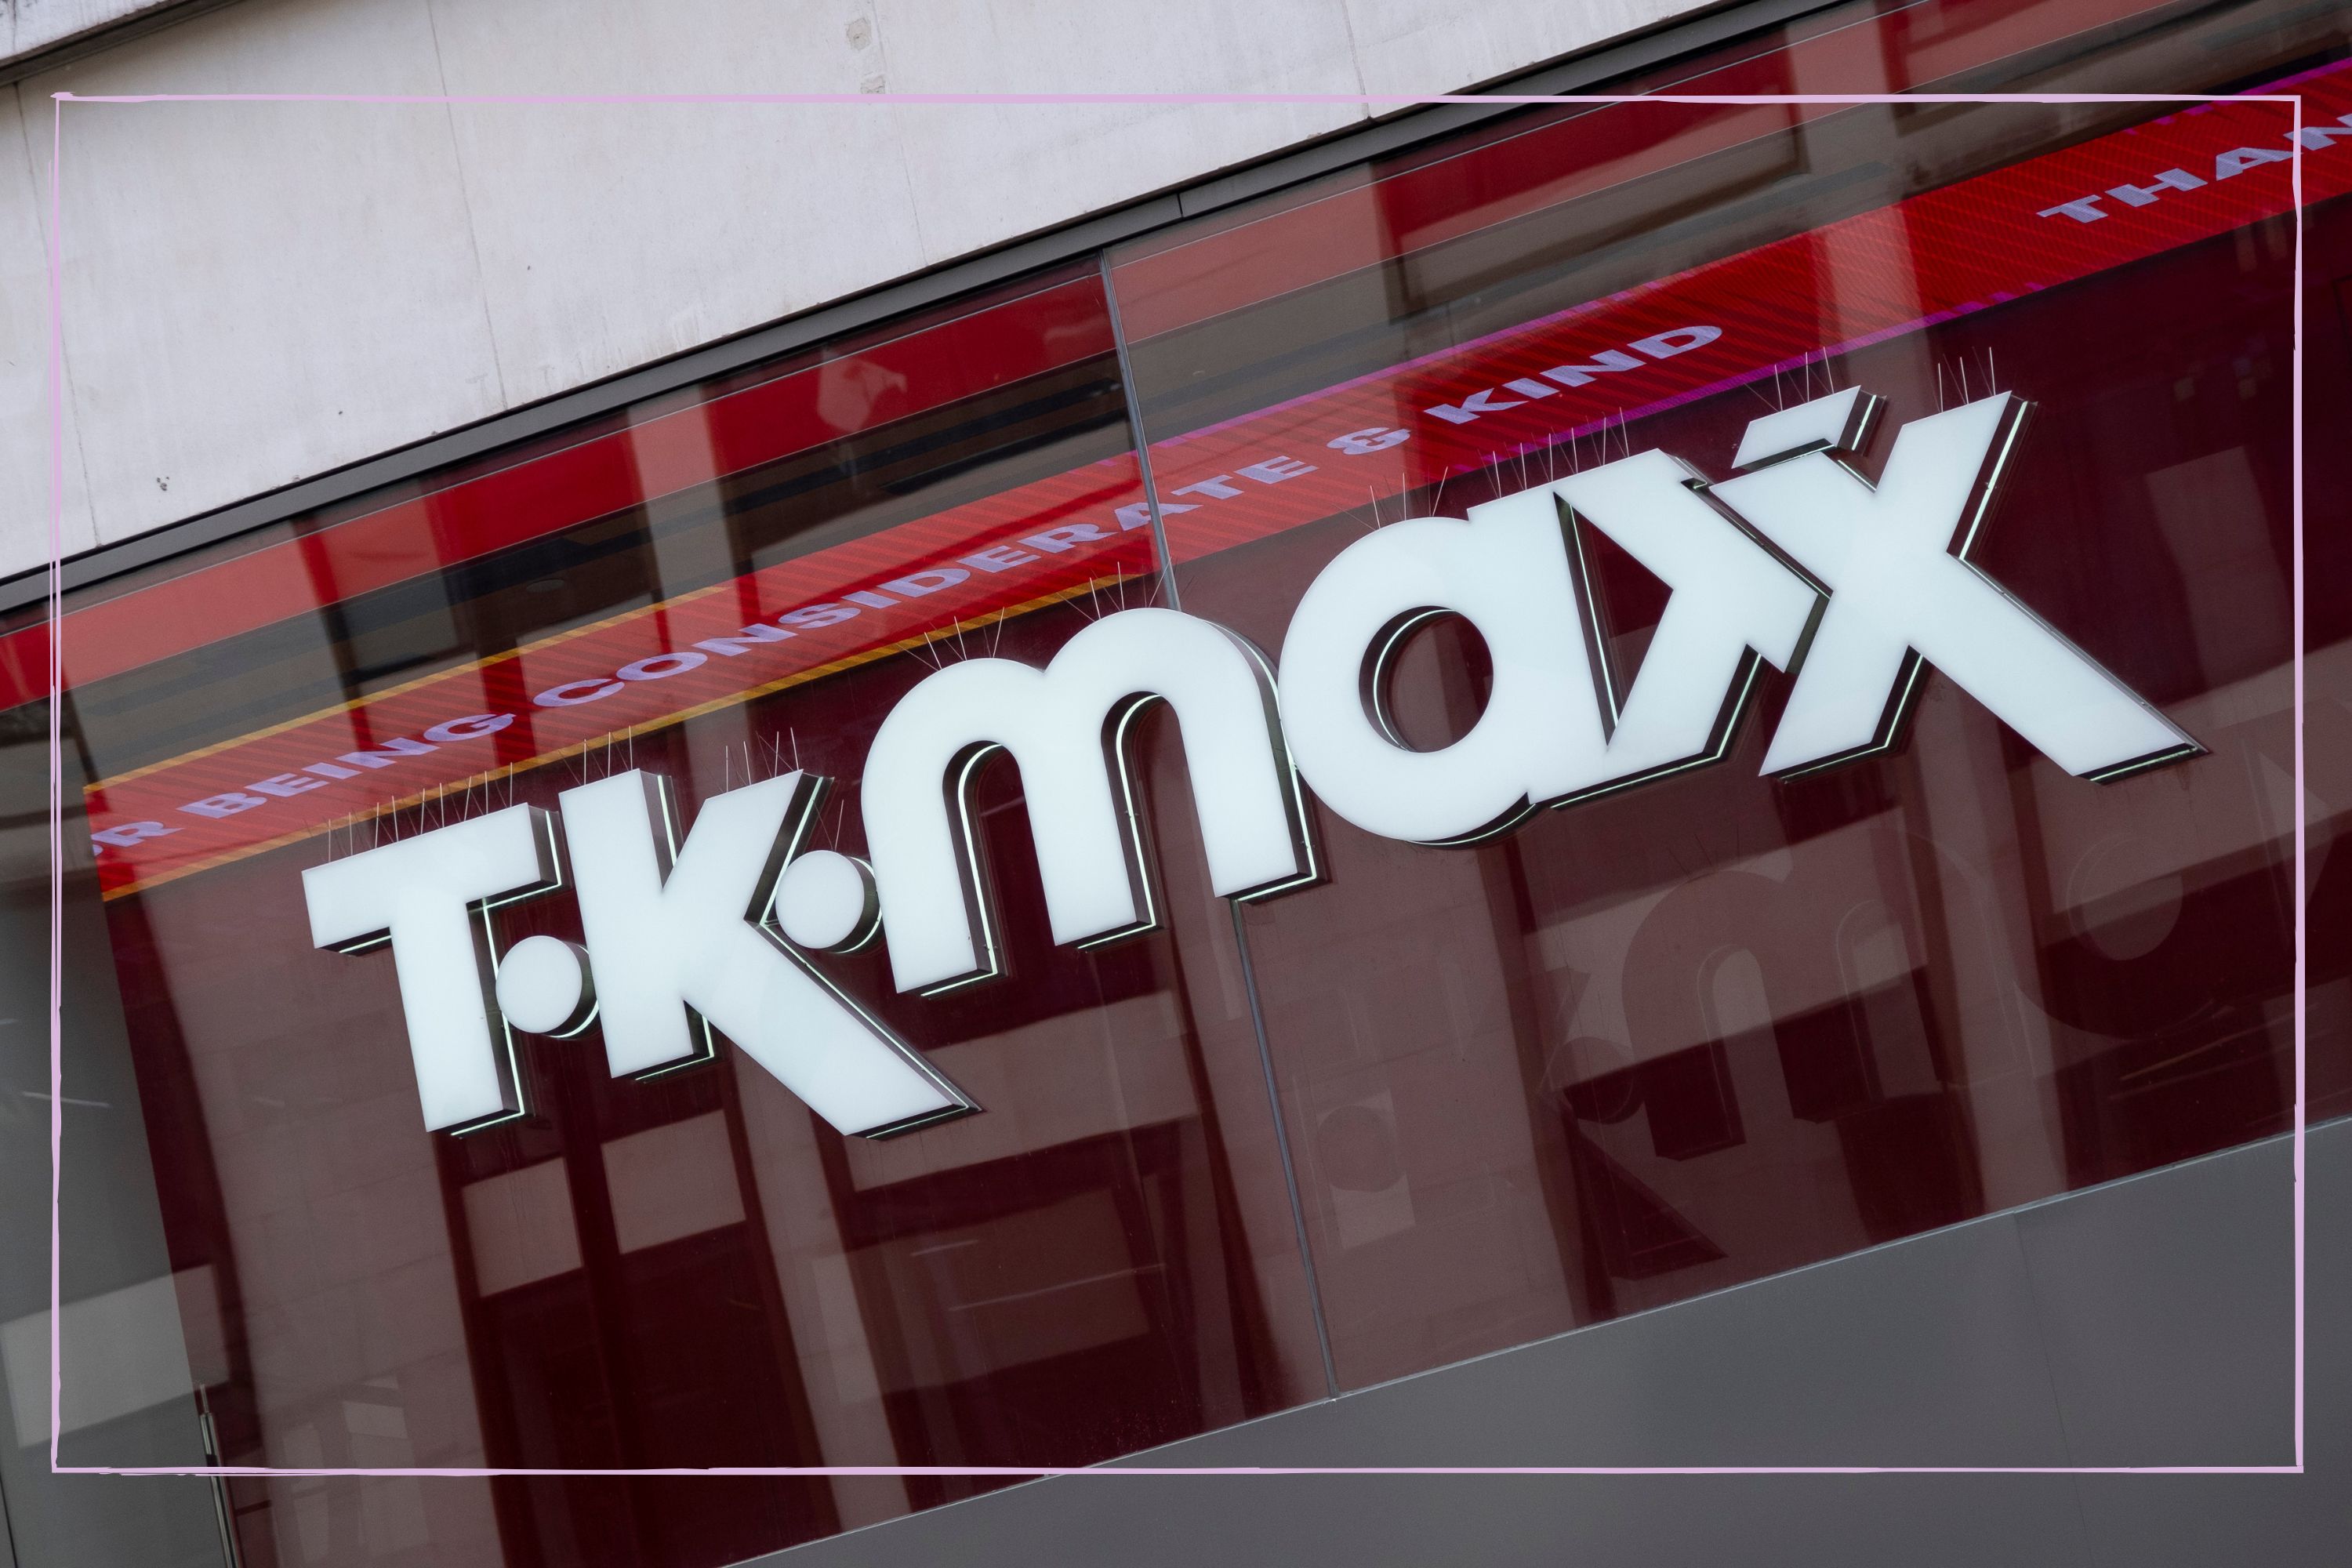 Is TK Maxx closing down?